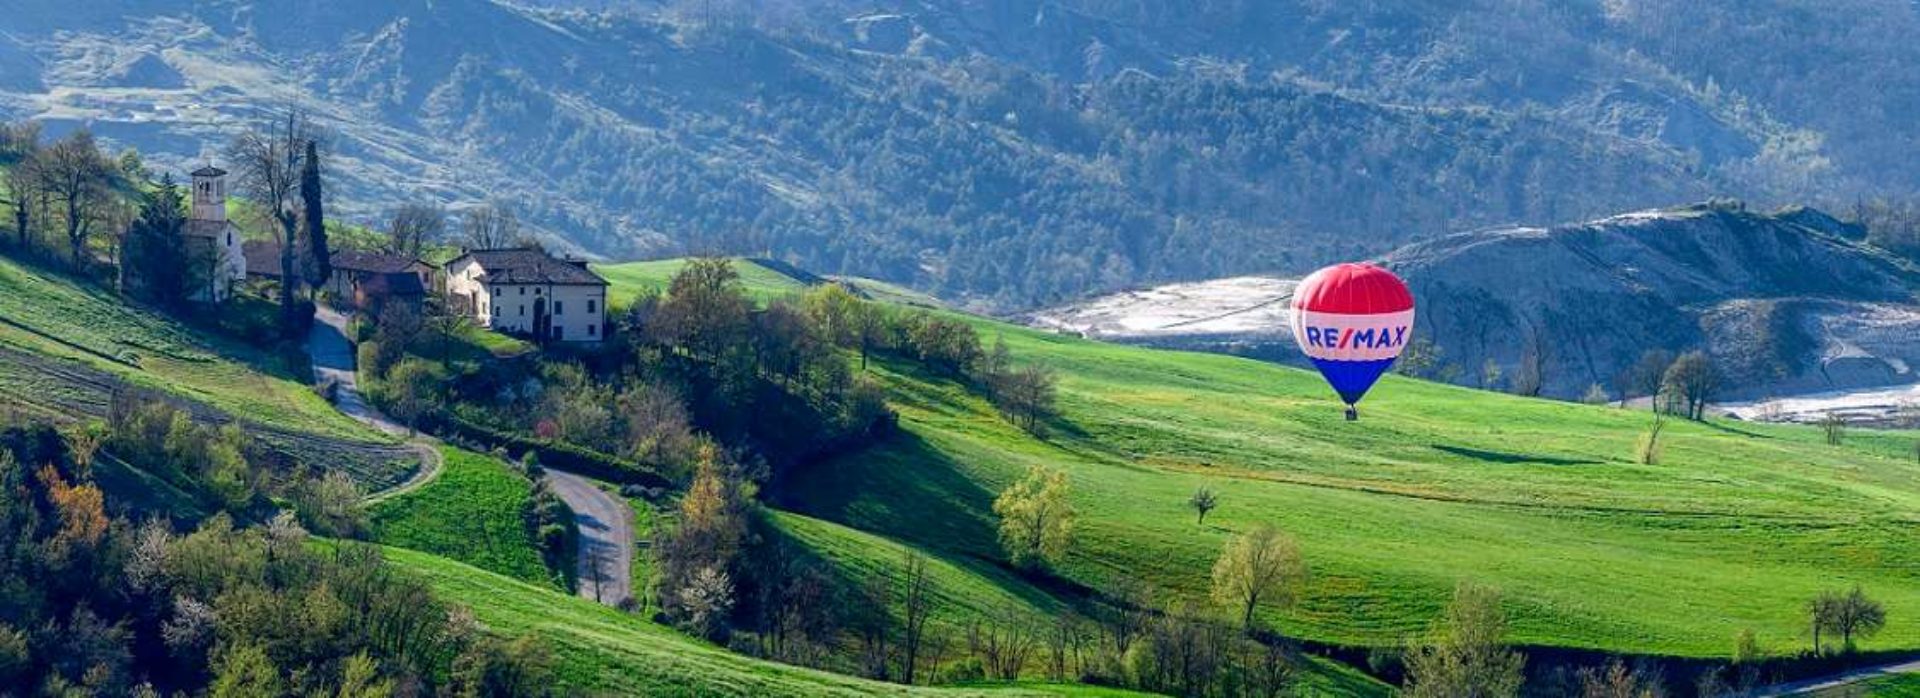 Hot Air Balloon Rides Emilia-Romagna